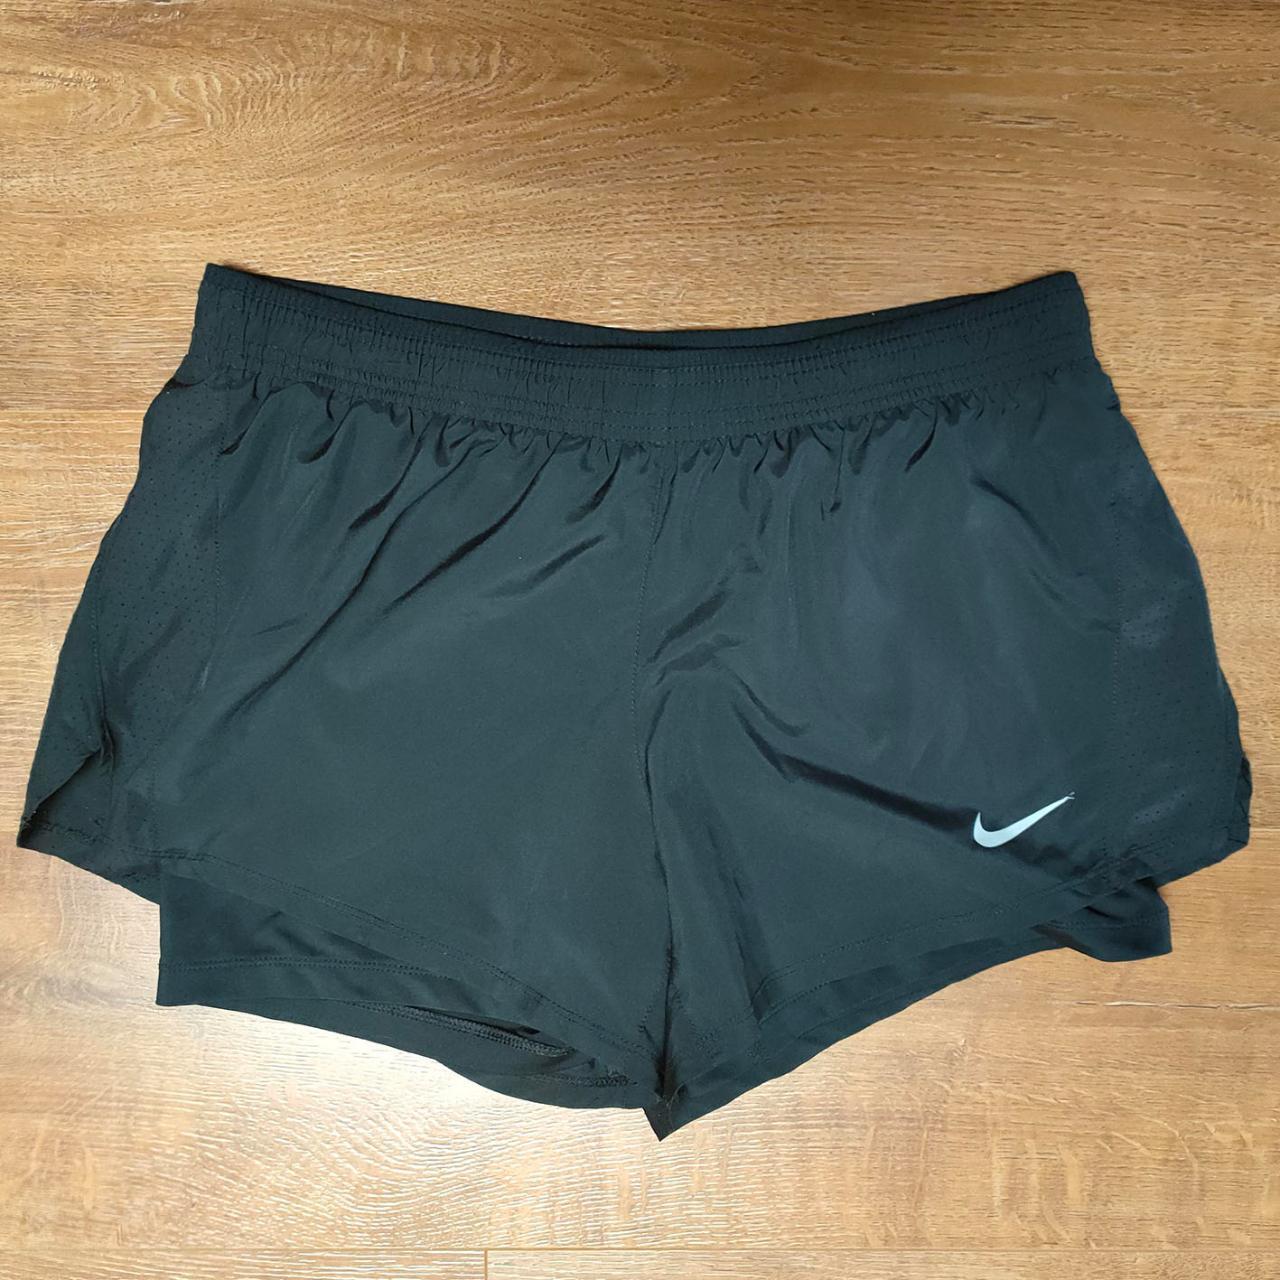 Nike Black Dri-Fit Running Shorts Size L Fair... - Depop